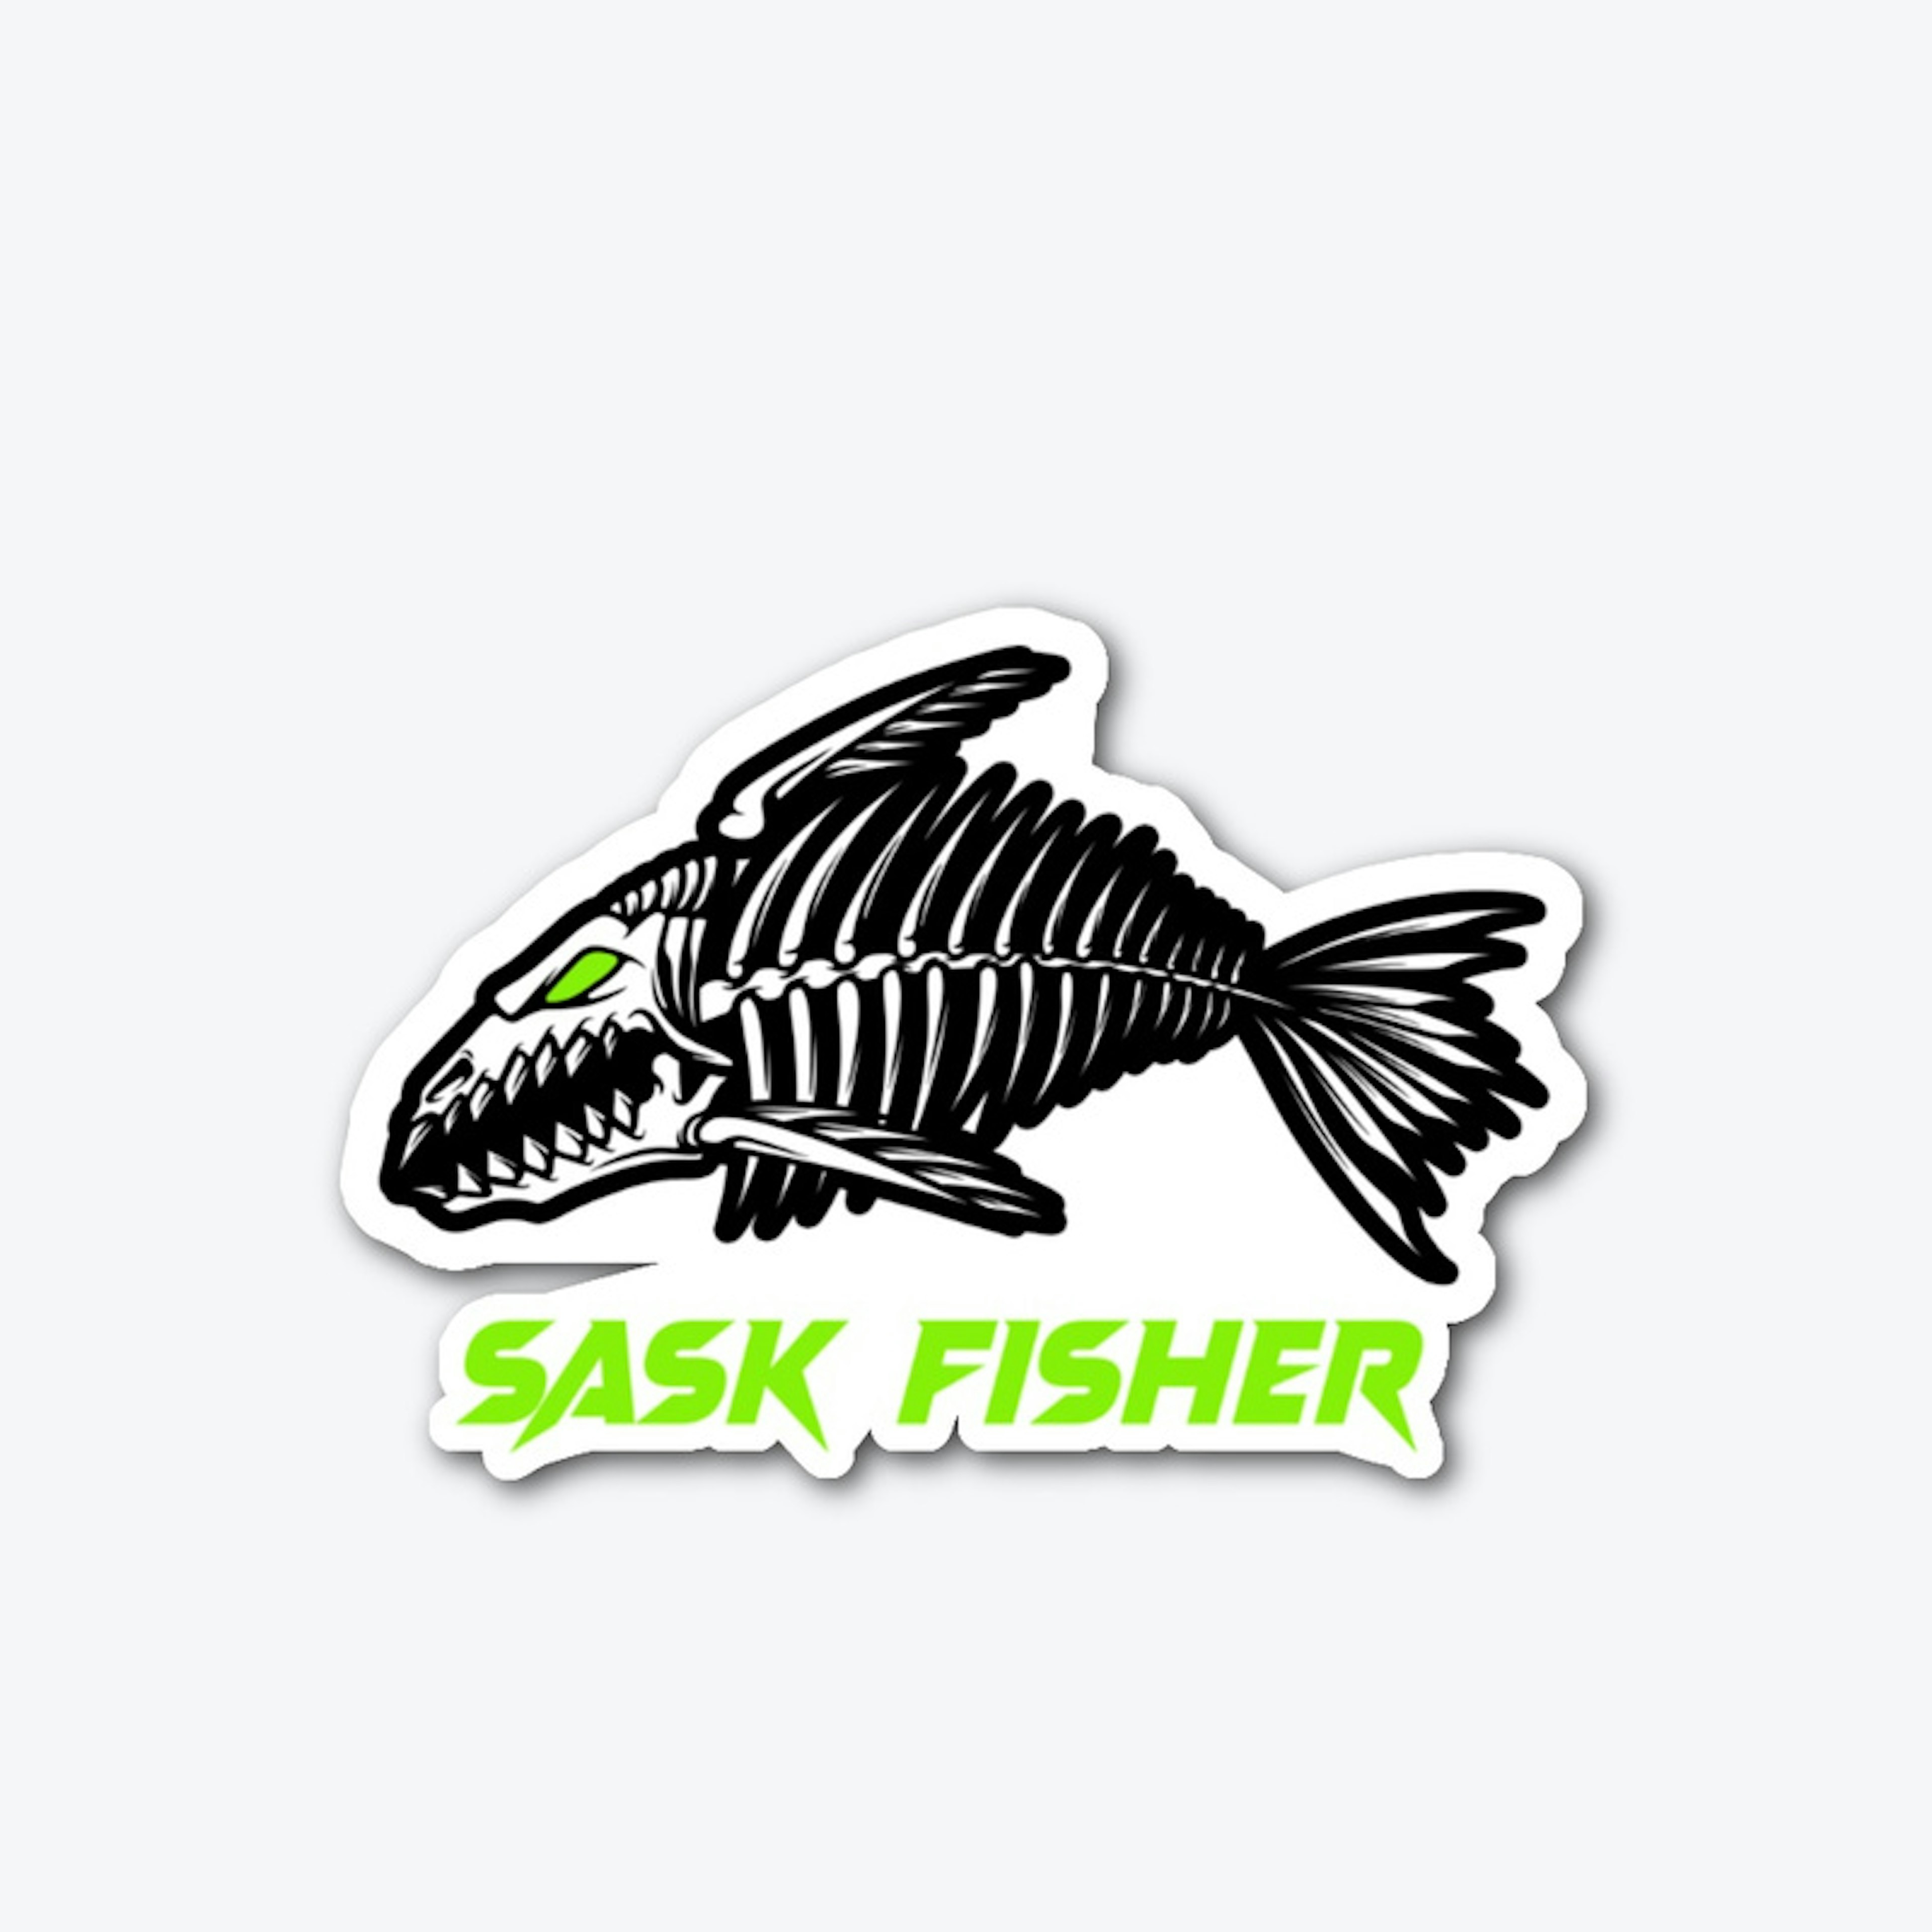 Sask Fisher Decal